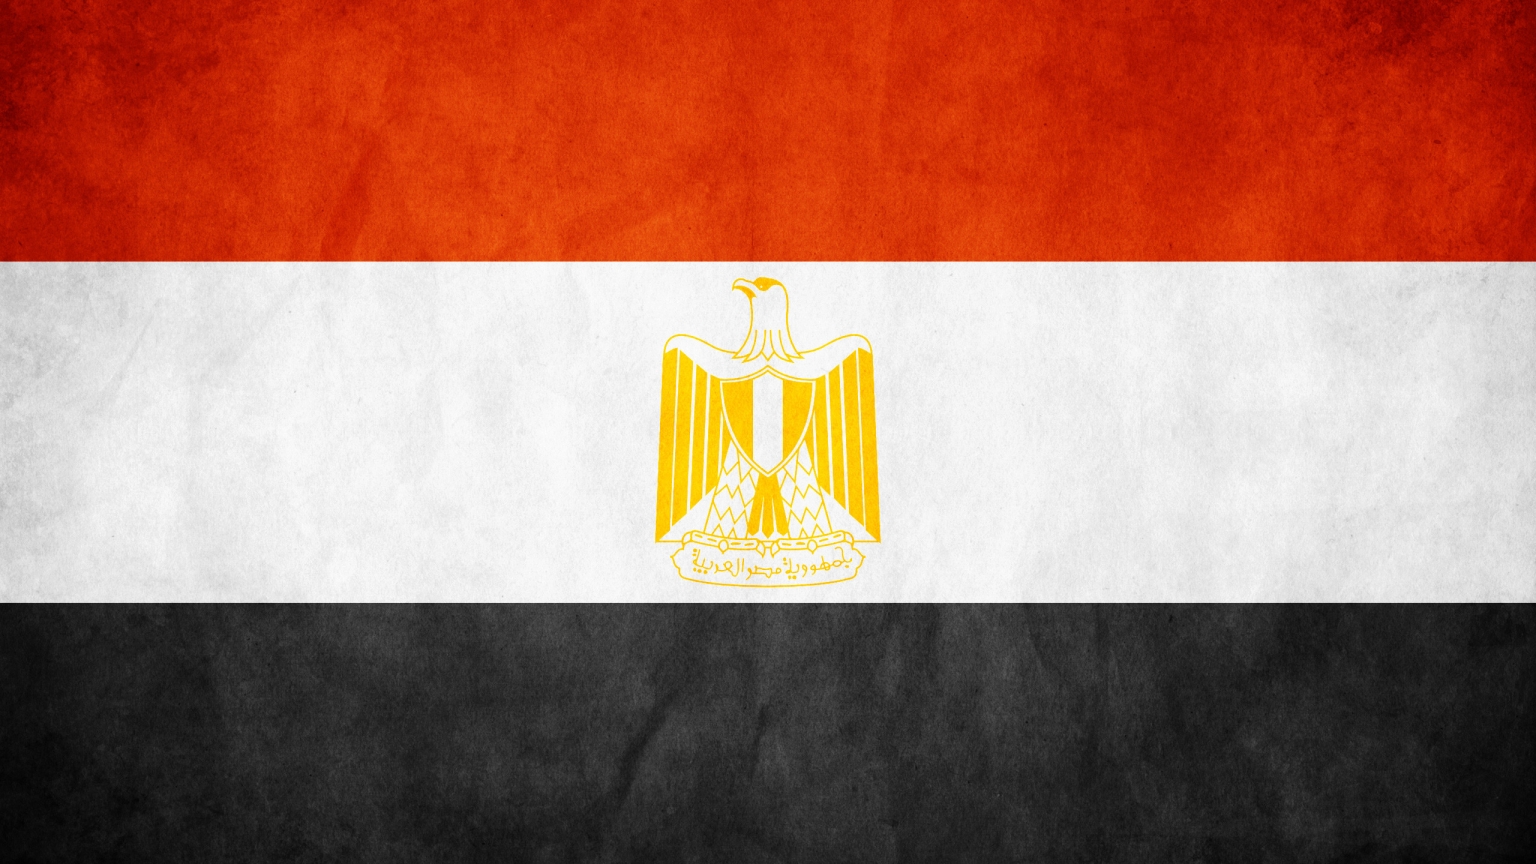 Egypt grunge flag for 1536 x 864 HDTV resolution